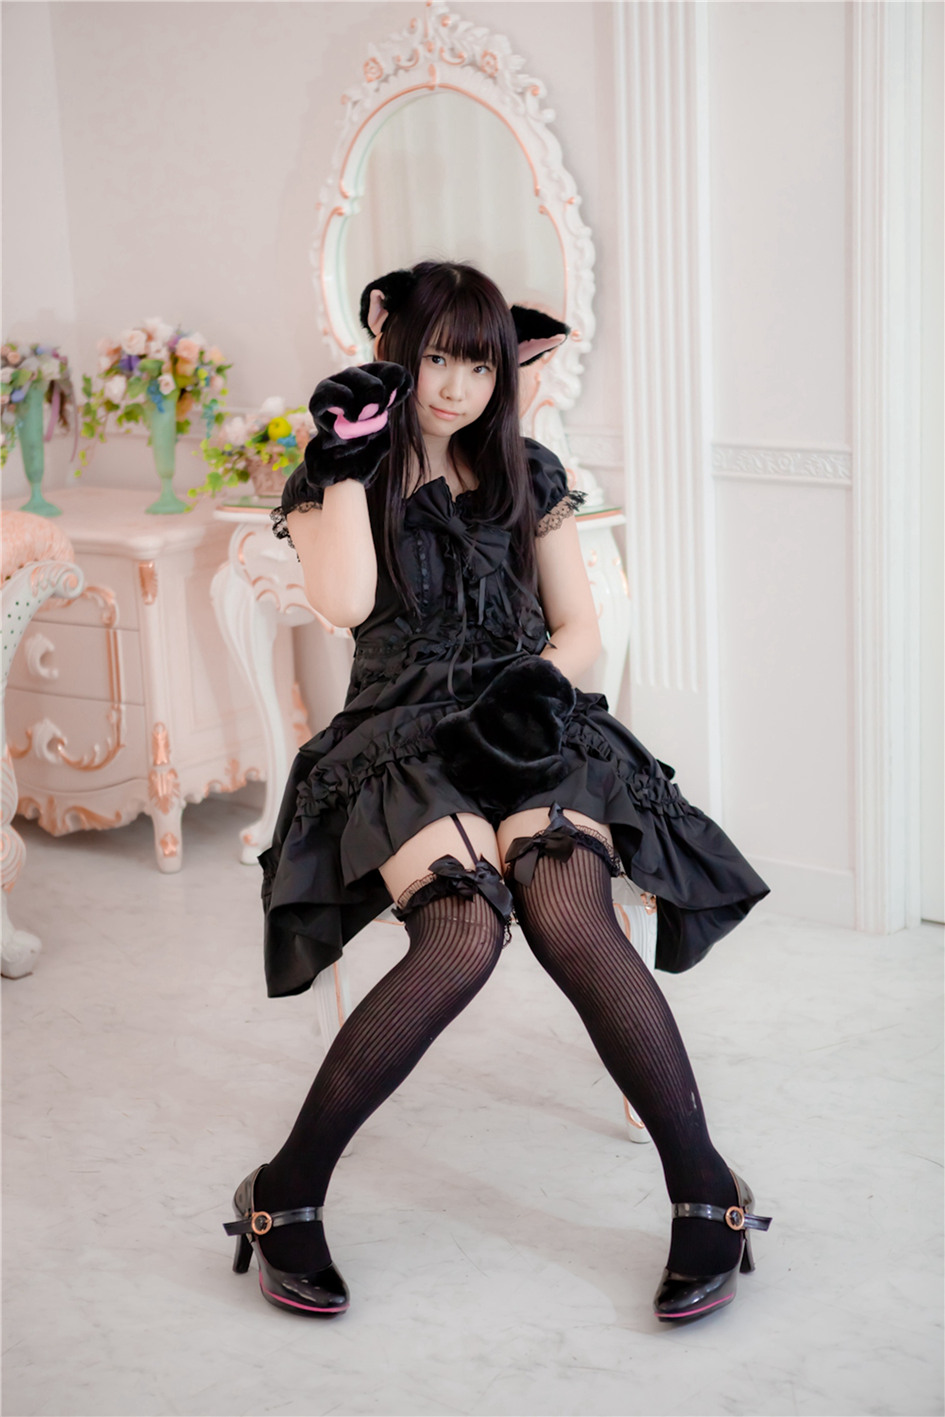 清纯可爱超级萌妹Enako cosplay猫女装写真第1张